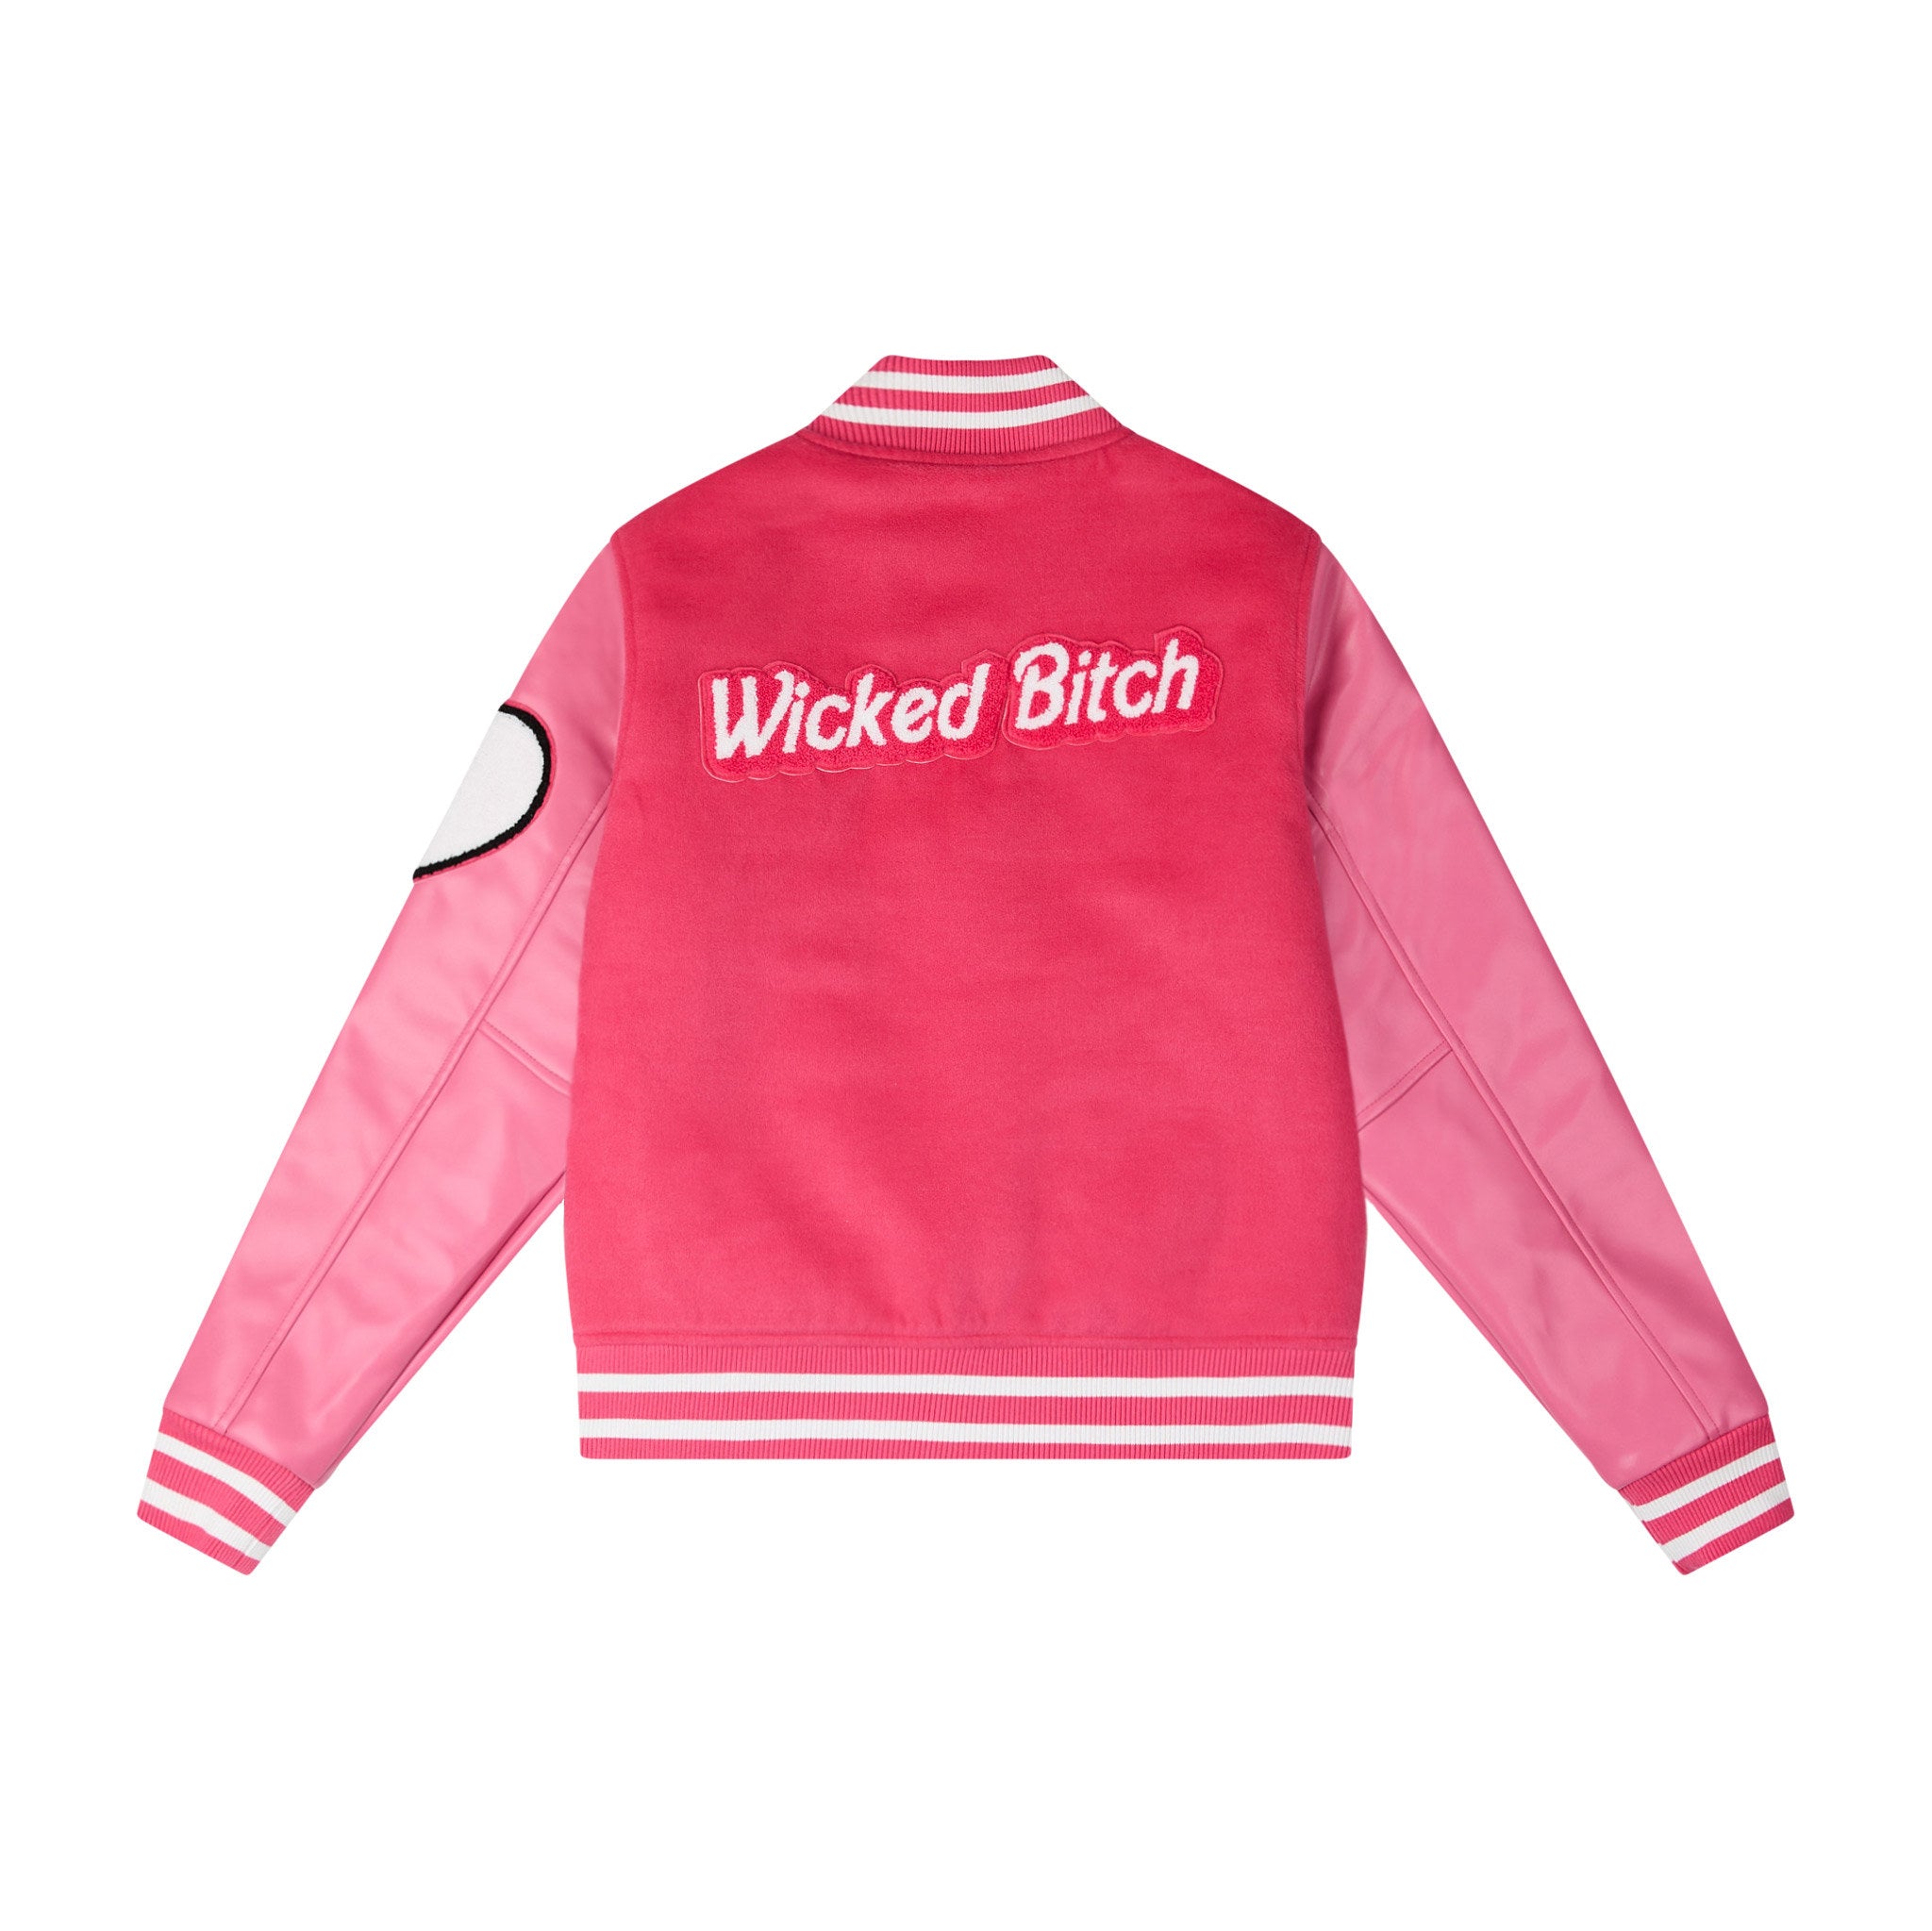 Wicked Bitch Letterman Jacket